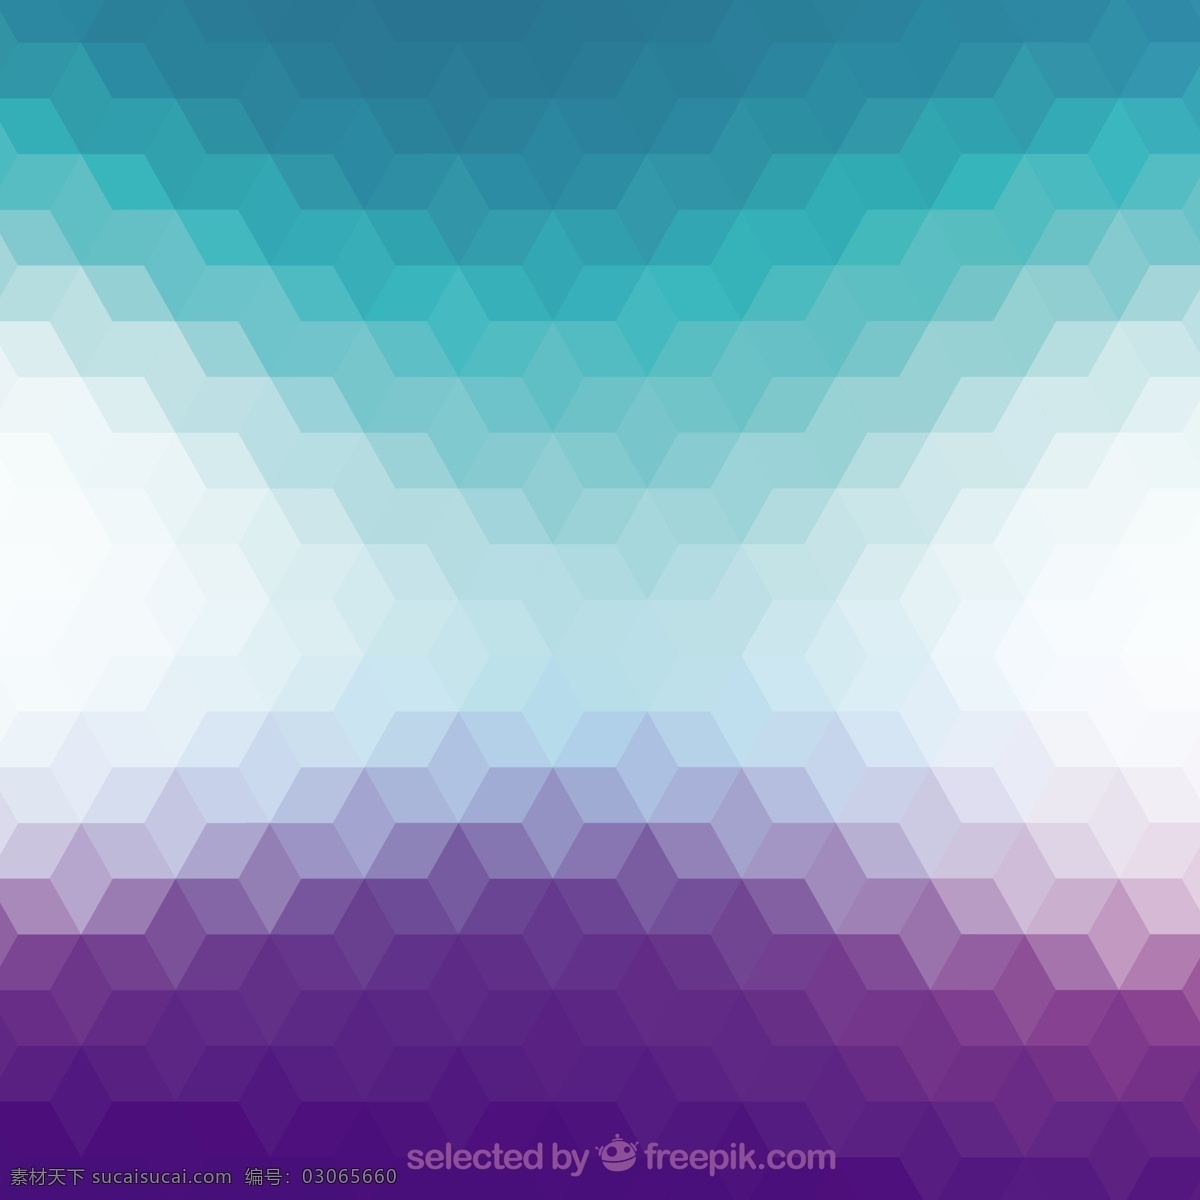 渐变 式 几何 背景 抽象 紫色 几何背景 梯度 多边形 紫色背景 风格 梯度背景 绿 青色 天蓝色